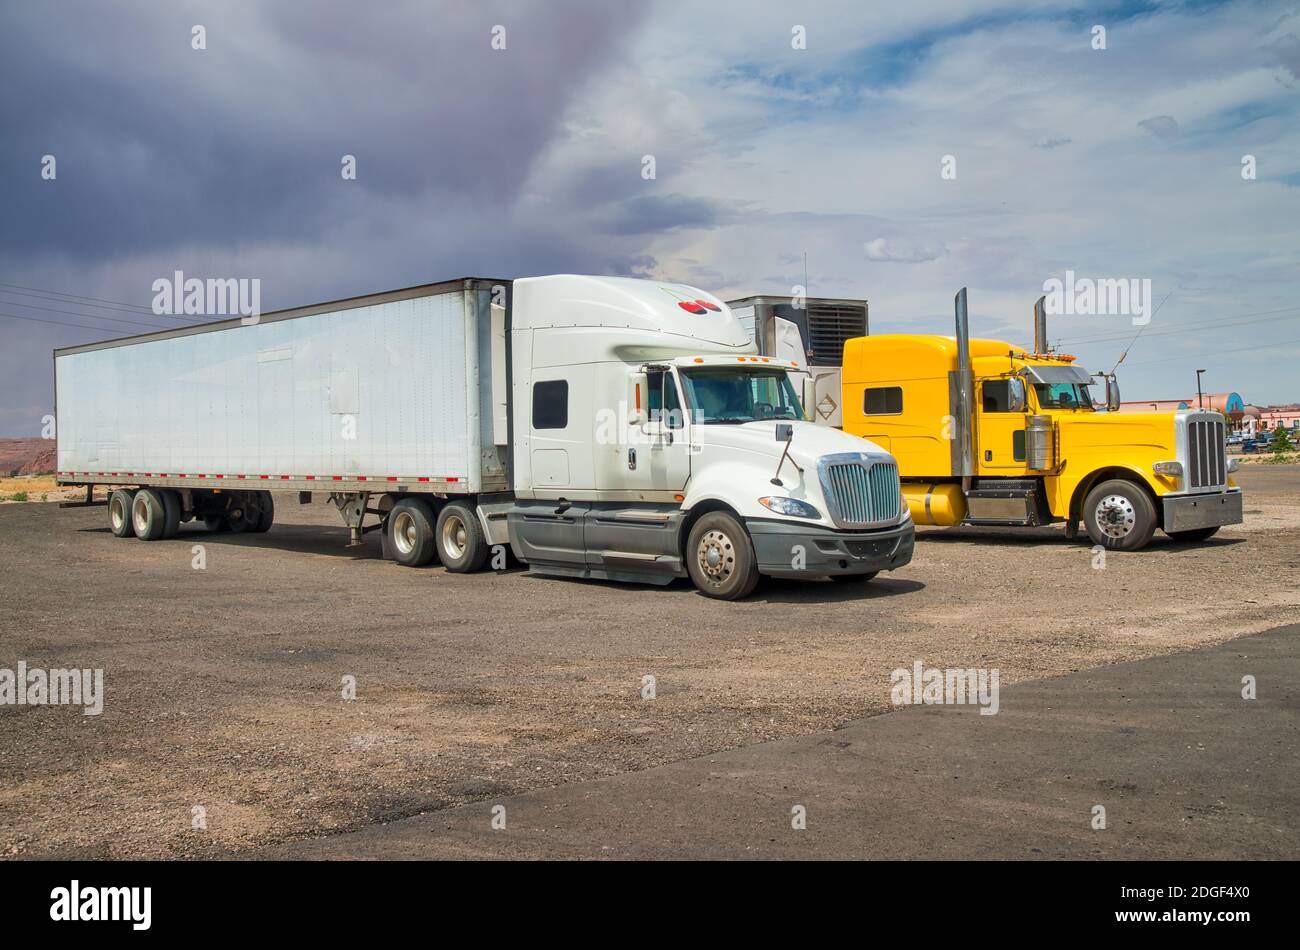 Grands camions colorés garés à la campagne Banque D'Images